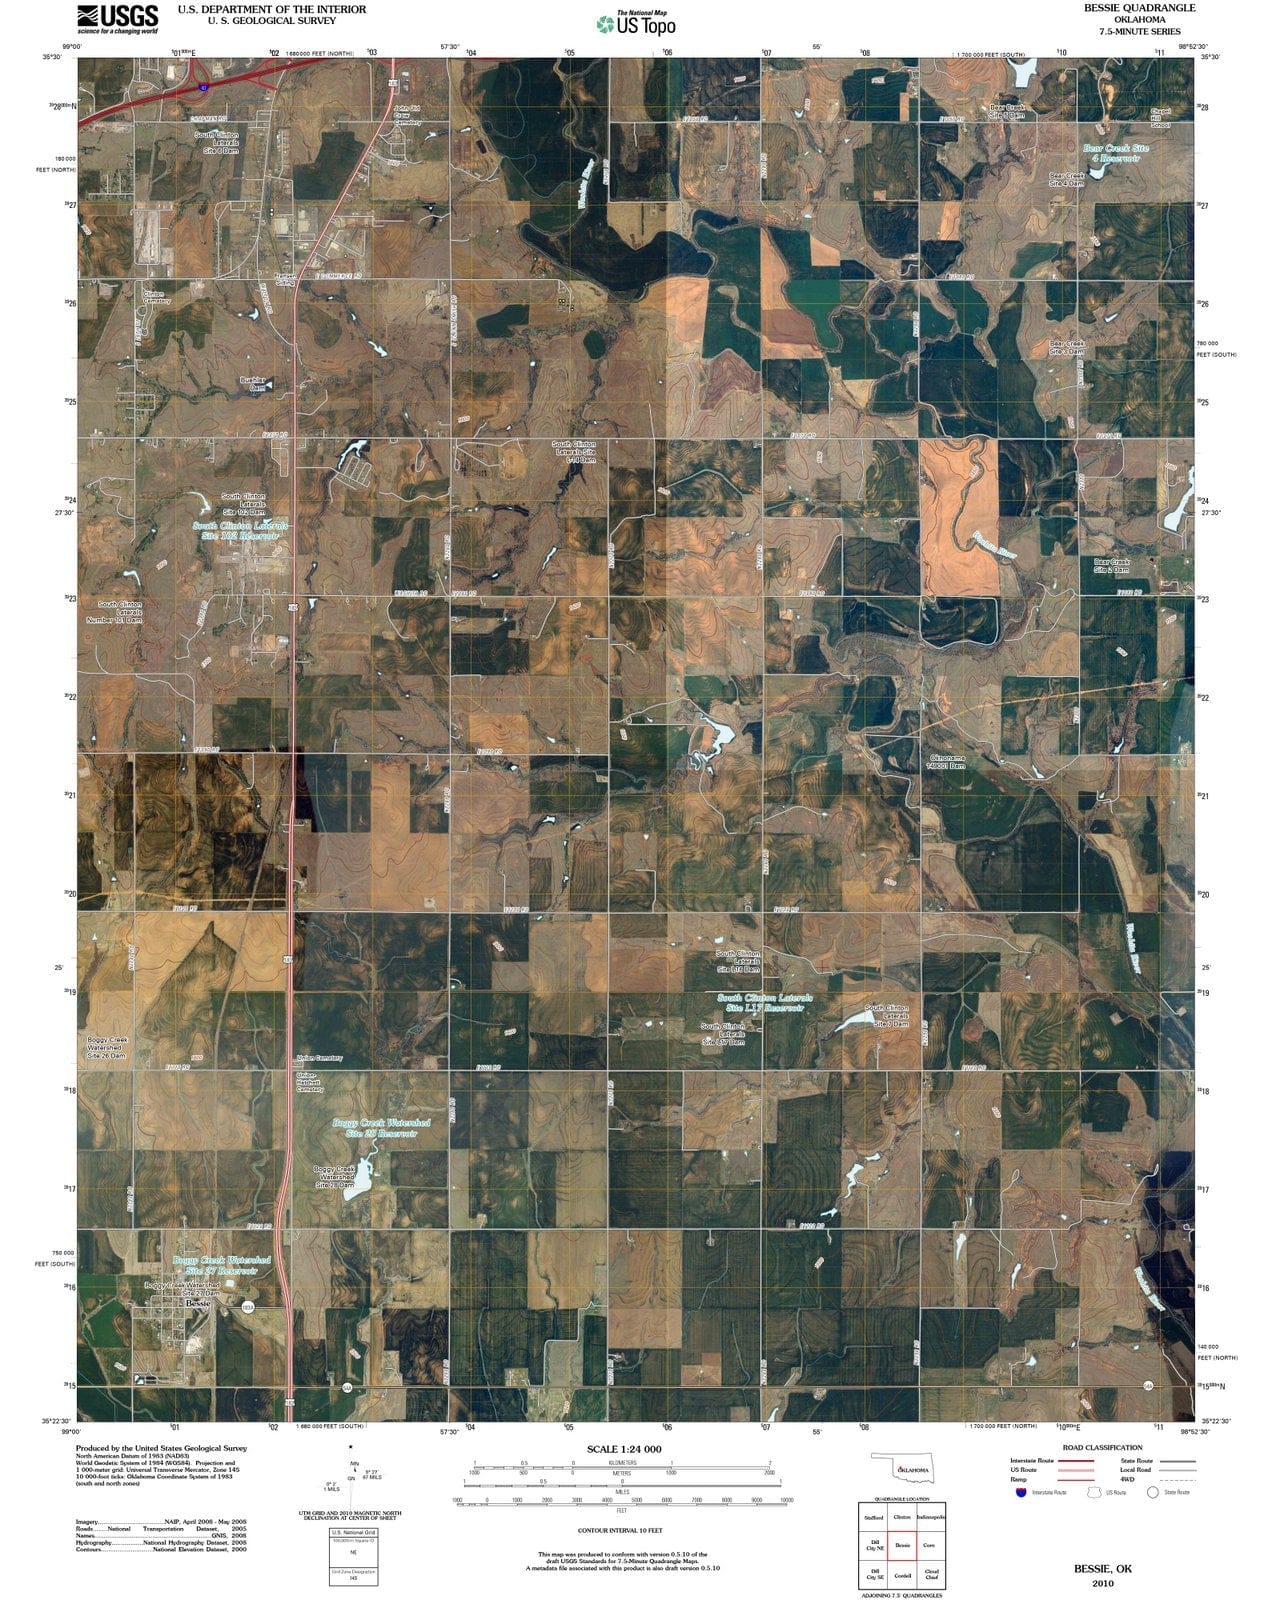 2010 Bessie, OK - Oklahoma - USGS Topographic Map